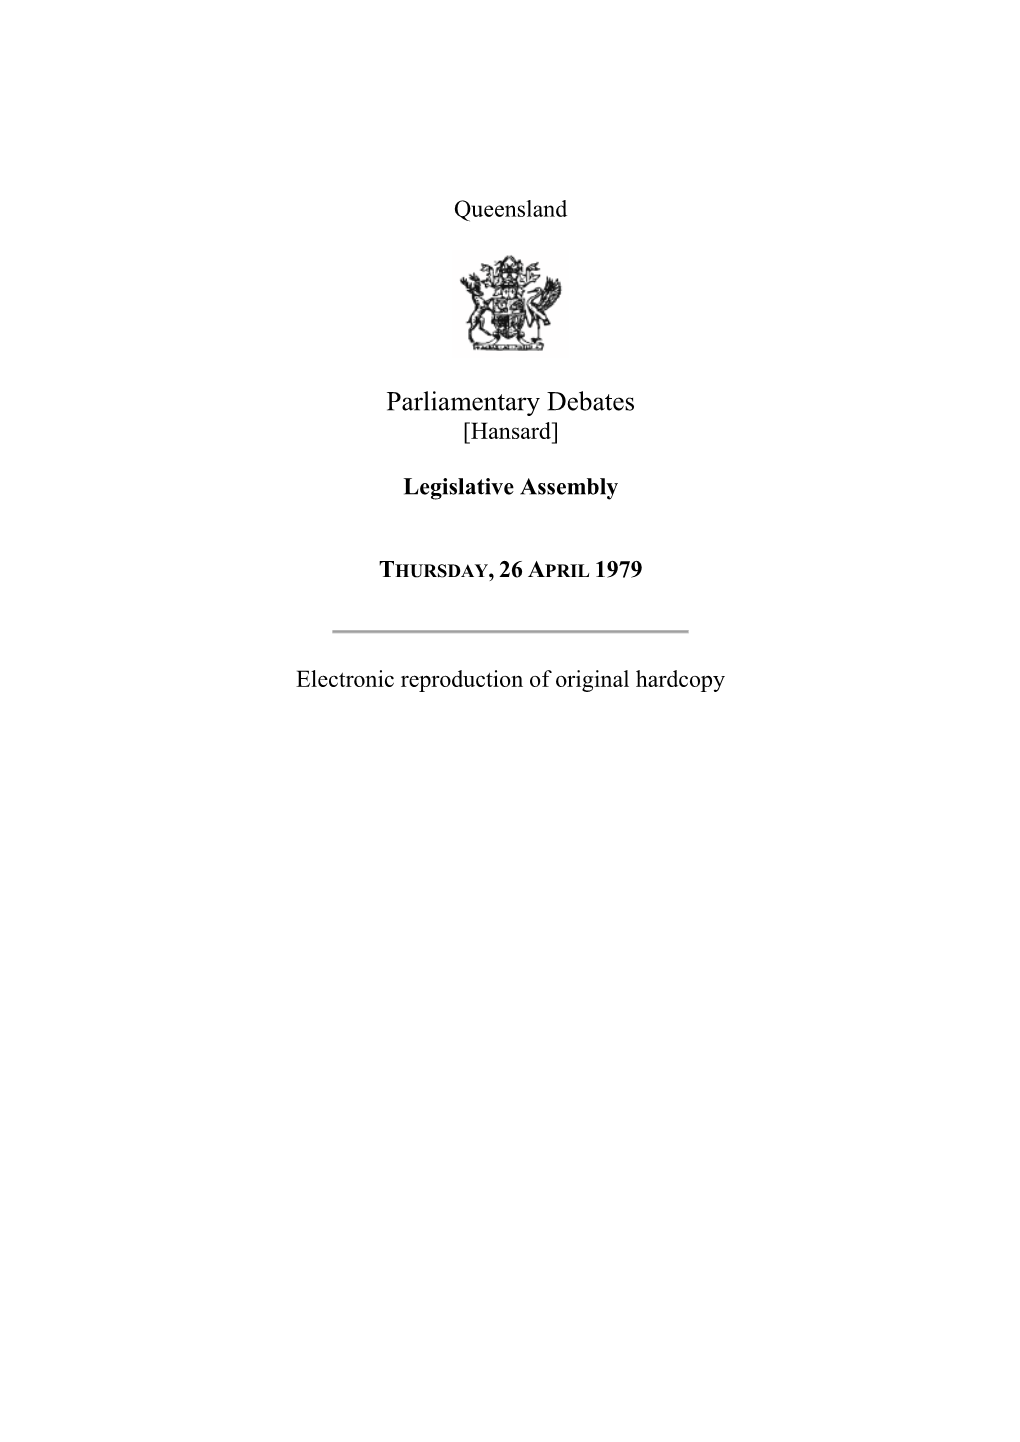 Legislative Assembly Hansard 1979